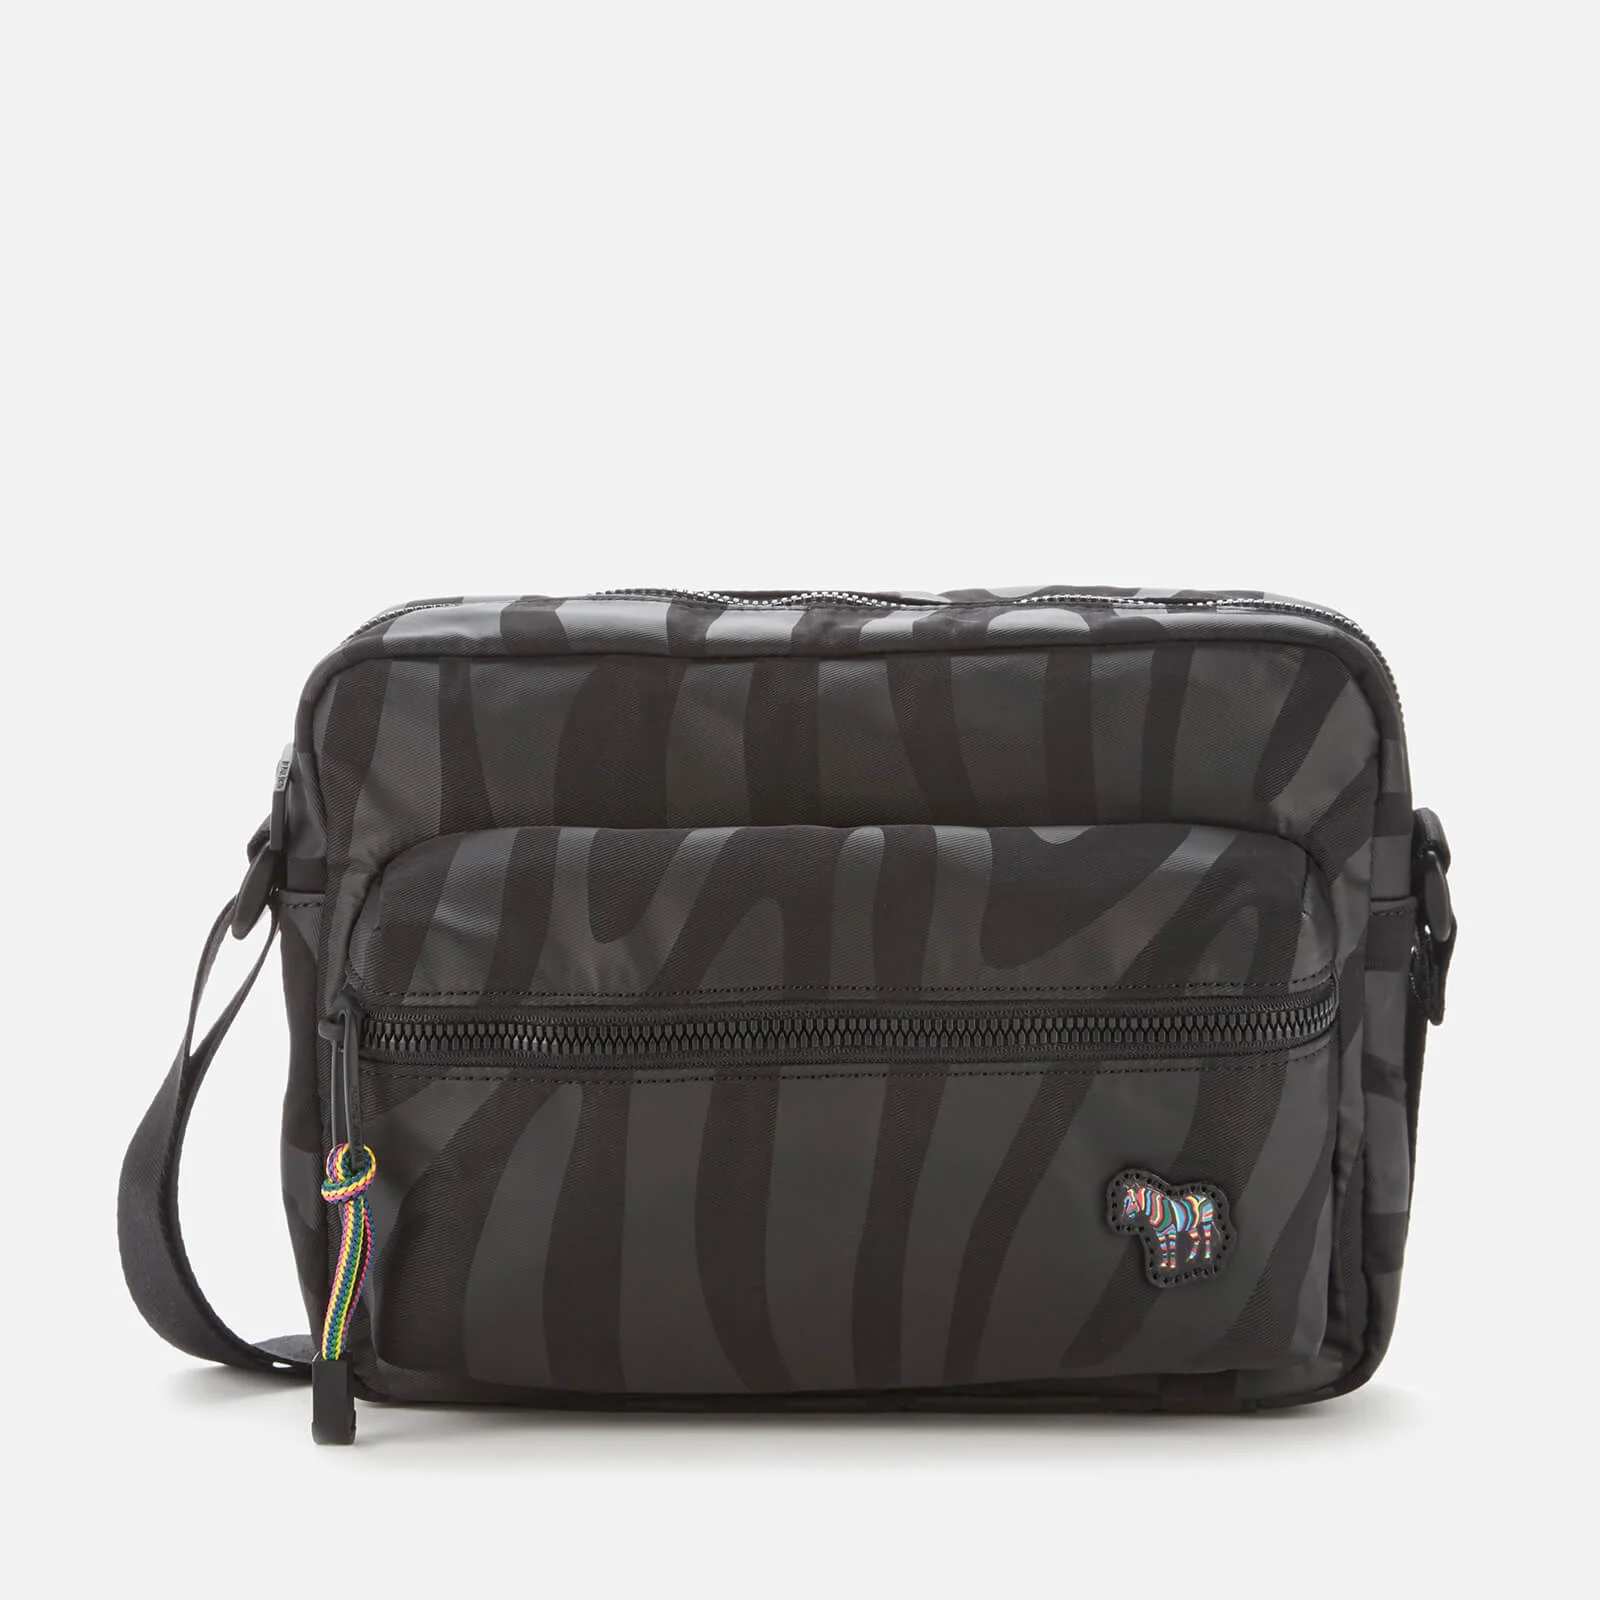 PS Paul Smith Men's Zebra Cross Body Bag - Black Image 1